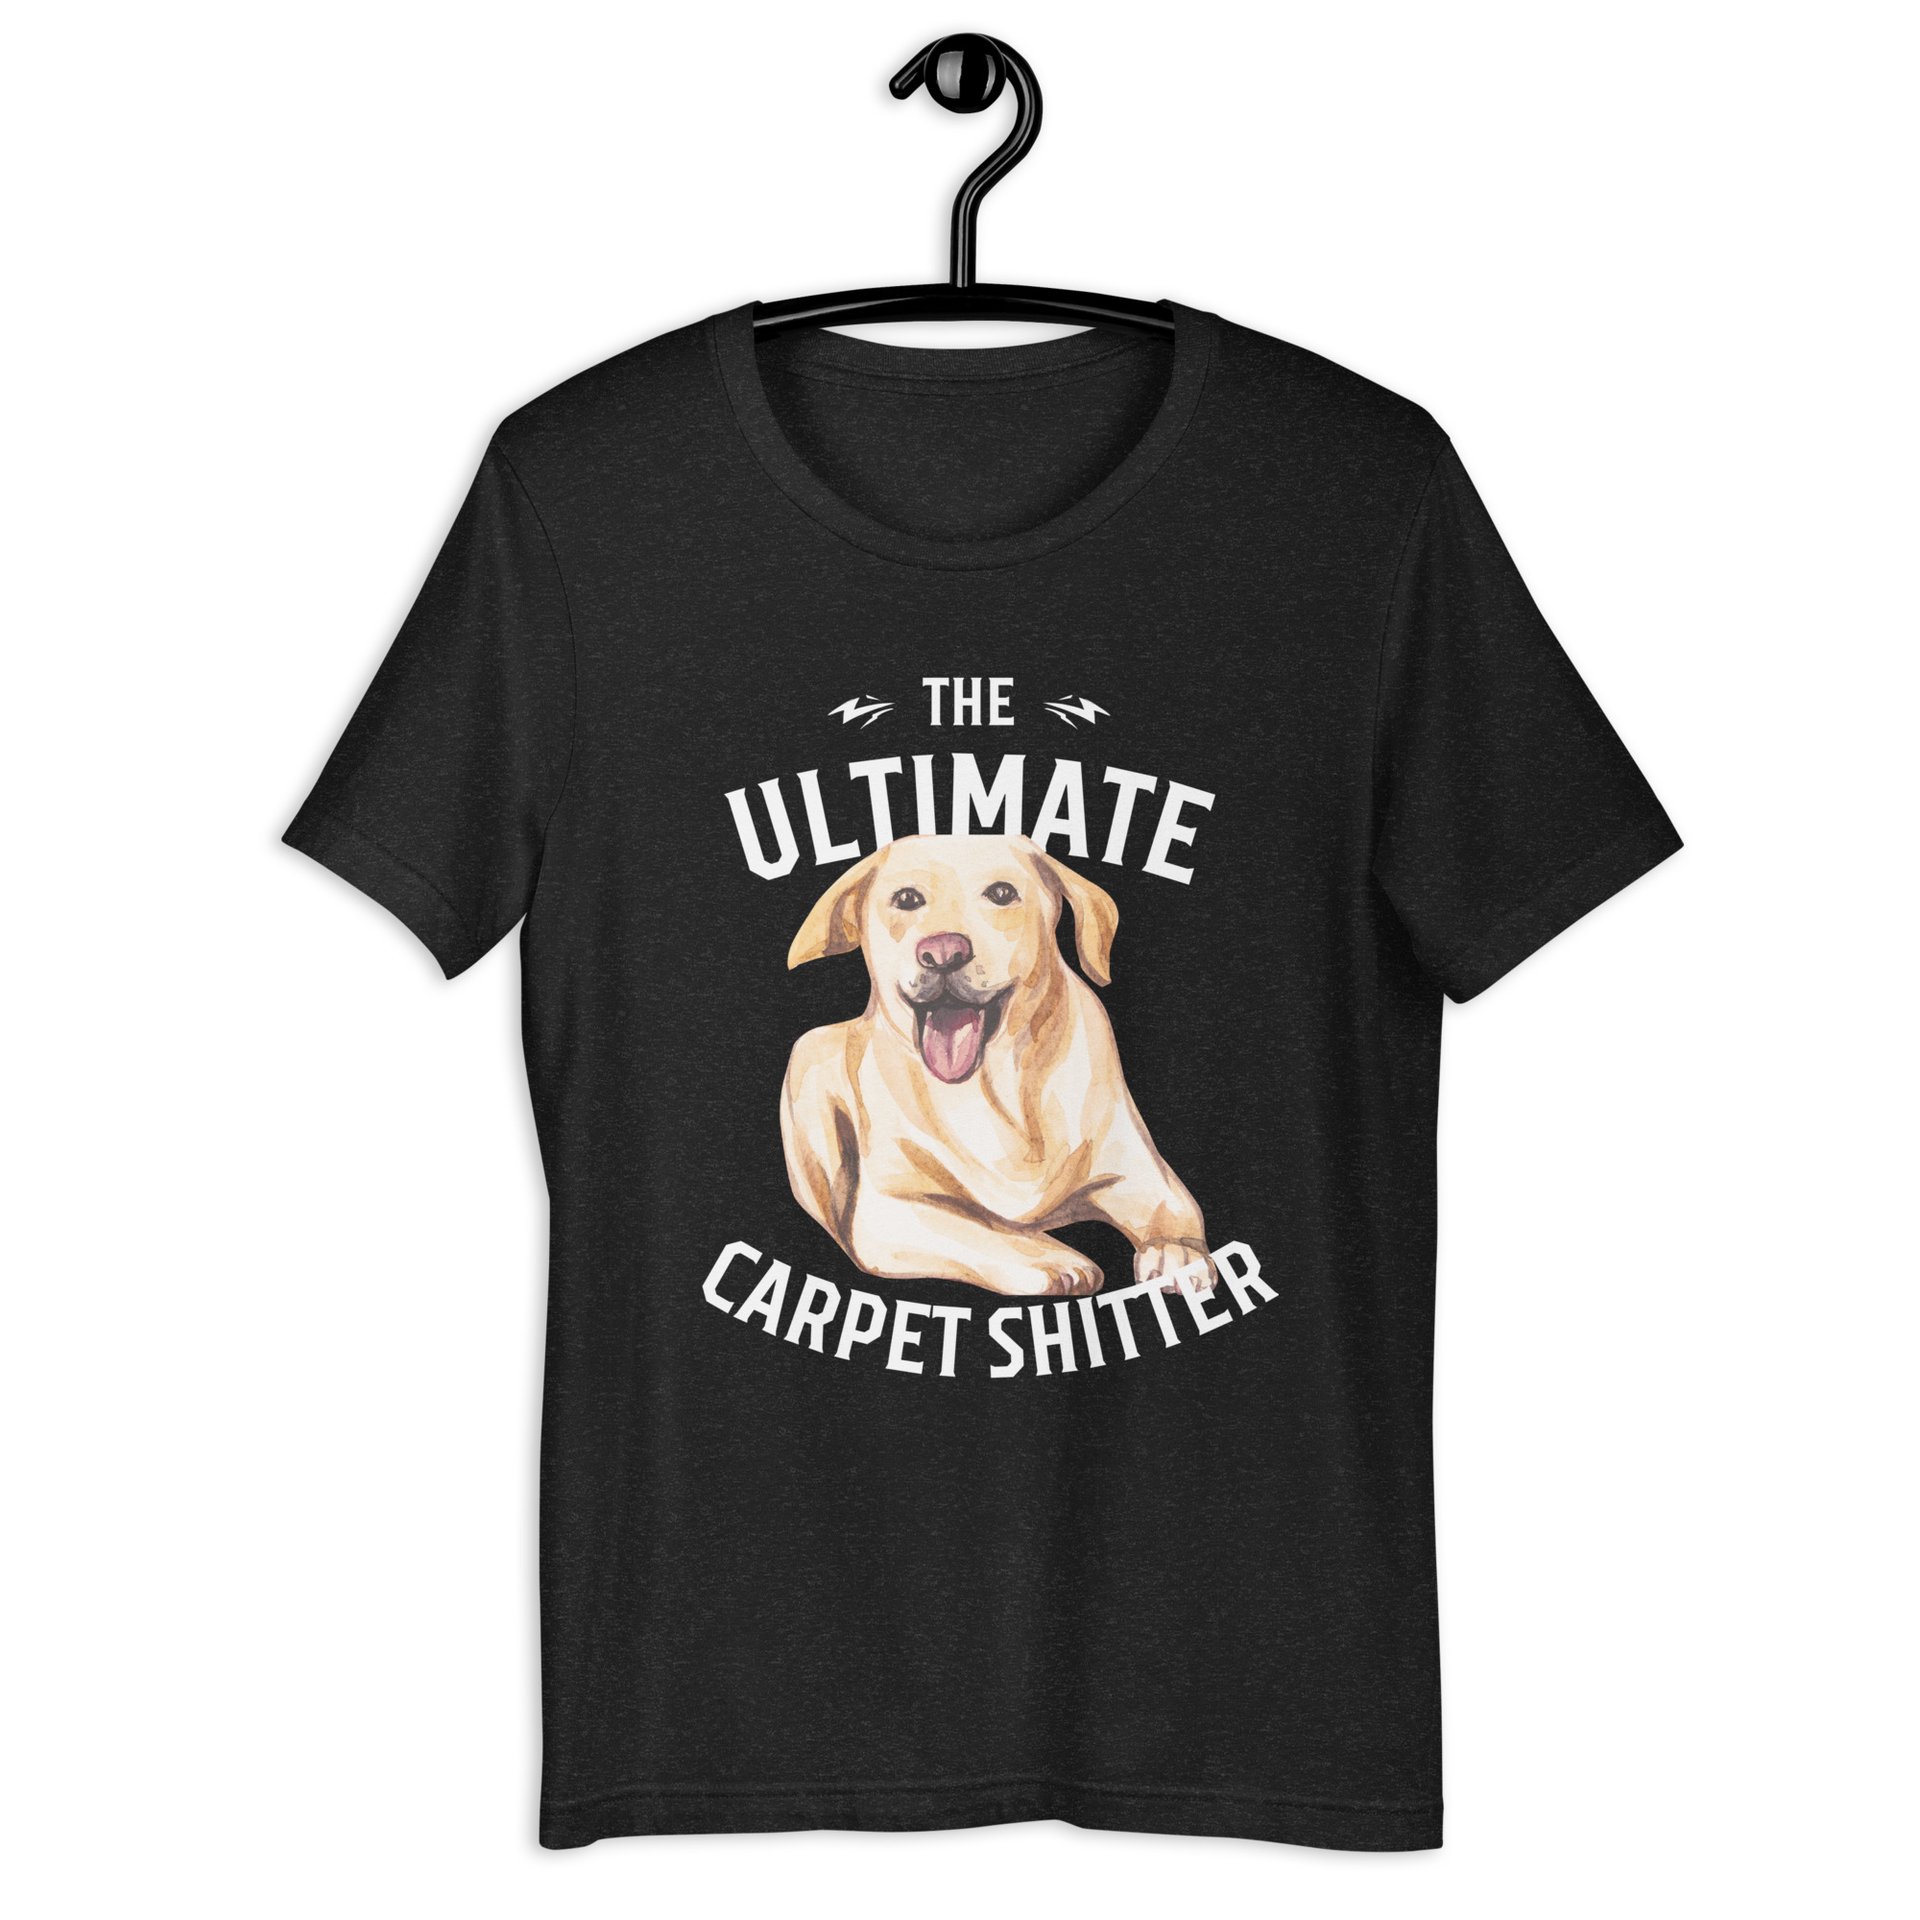 The Ultimate Carpet Shitter Funny Golden Retriever Unisex T-Shirt black